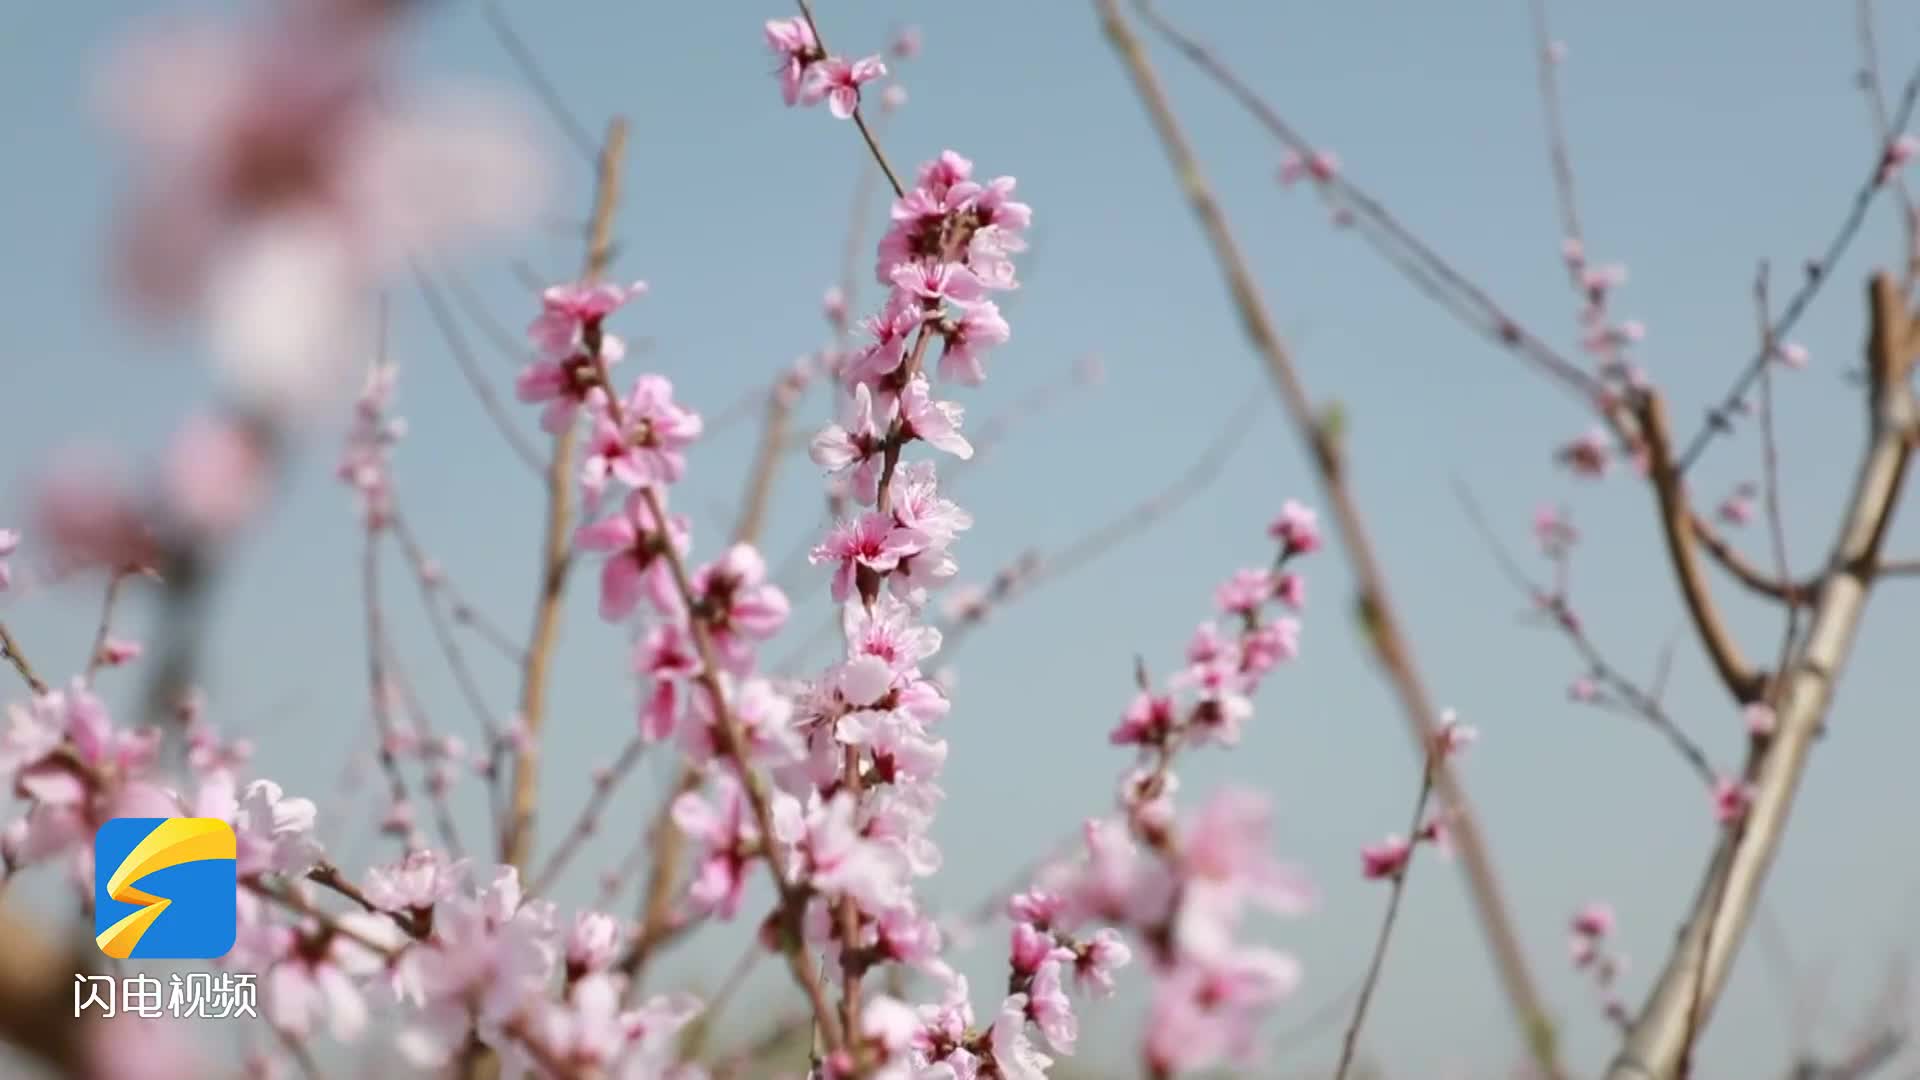 春暖花开 惠民万亩粉色桃花争相绽放